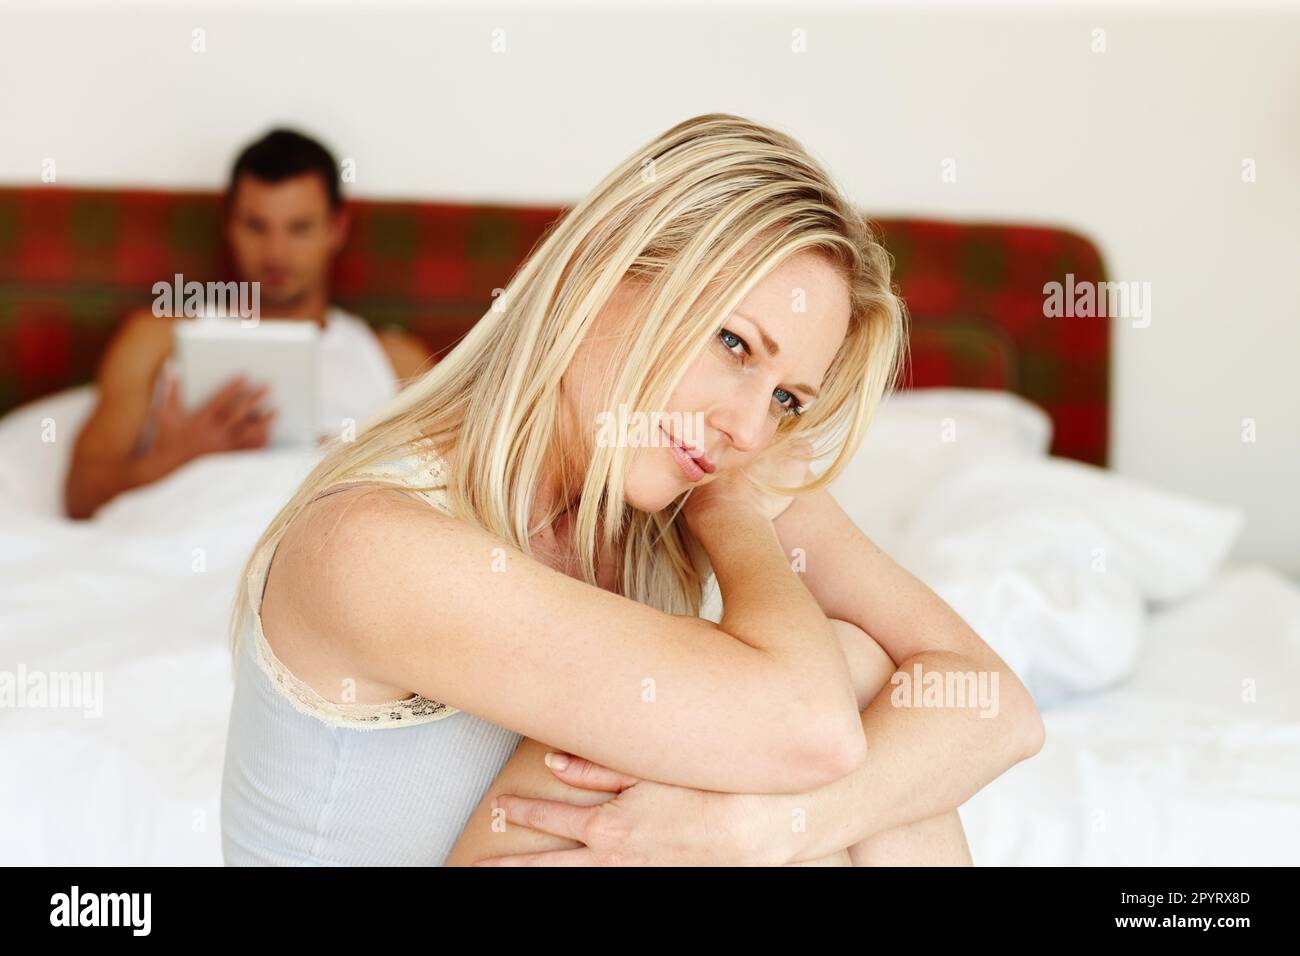 Ein Moment der Besinnung. Porträt einer verletzlich aussehenden Frau, die am Rand des Bettes sitzt, mit ihrem Freund im Hintergrund. Stockfoto